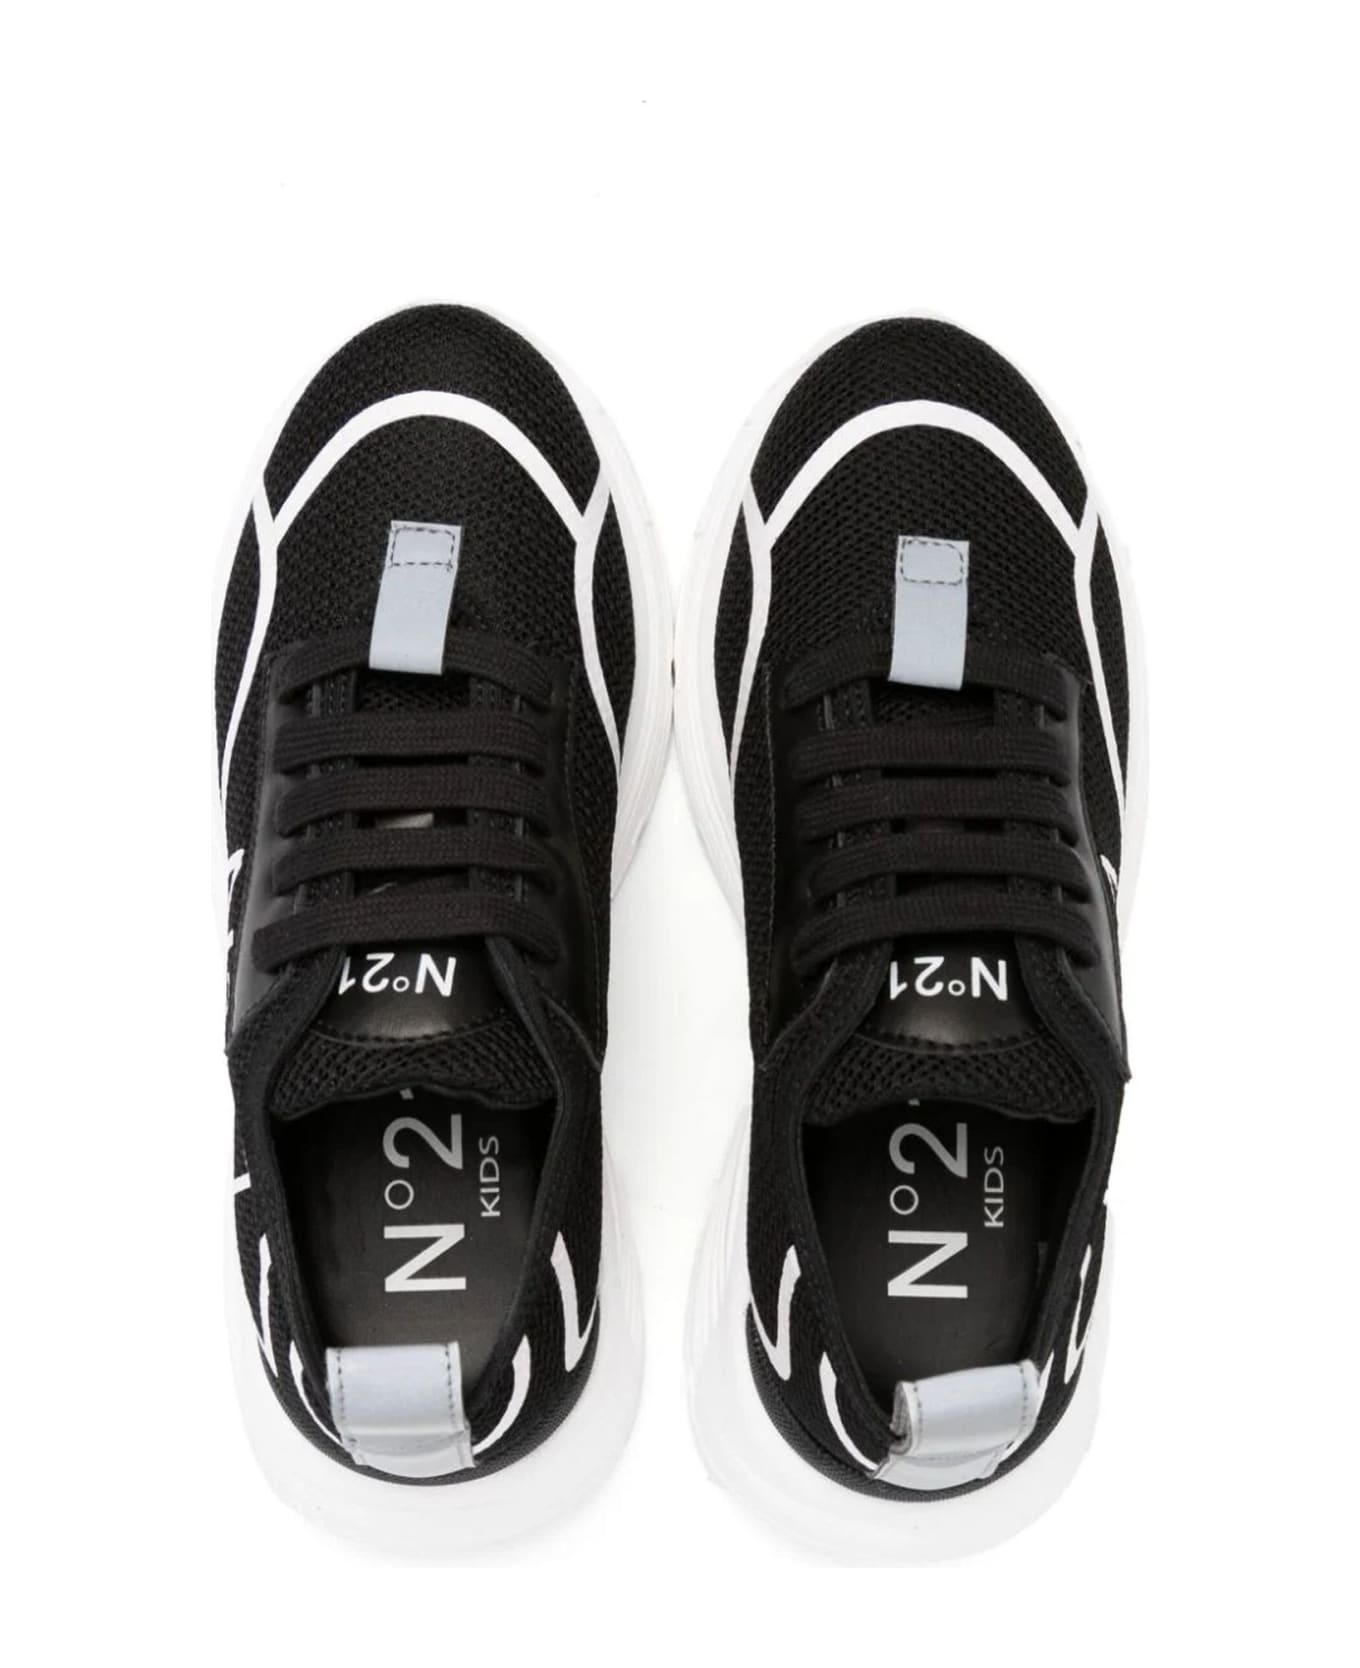 N.21 N°21 Sneakers Black - Black シューズ